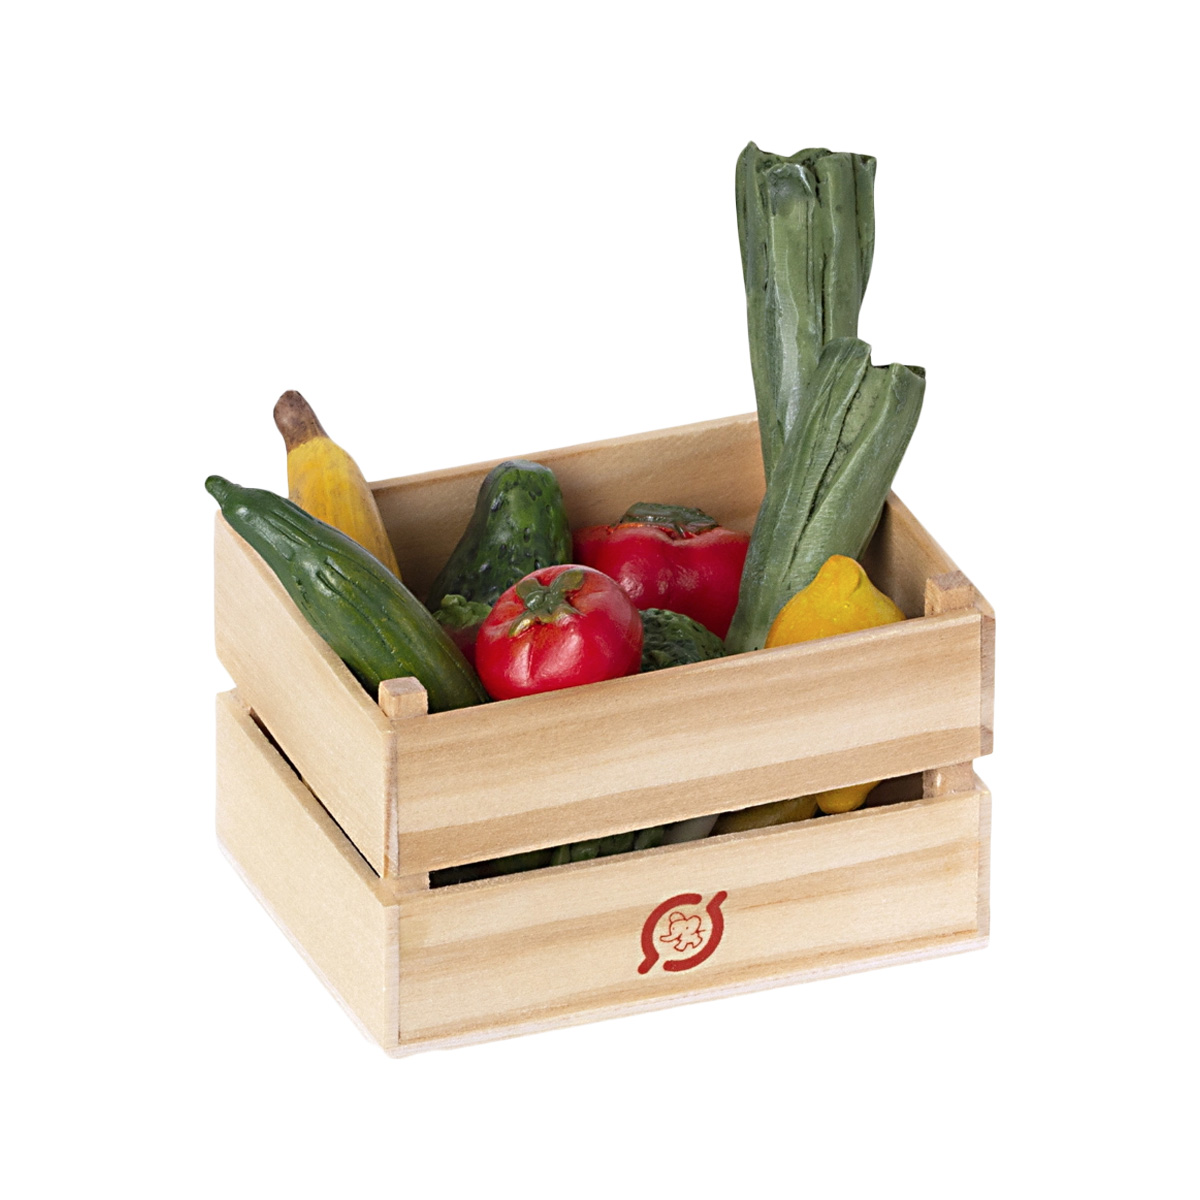 maileg veggies and fruits in box